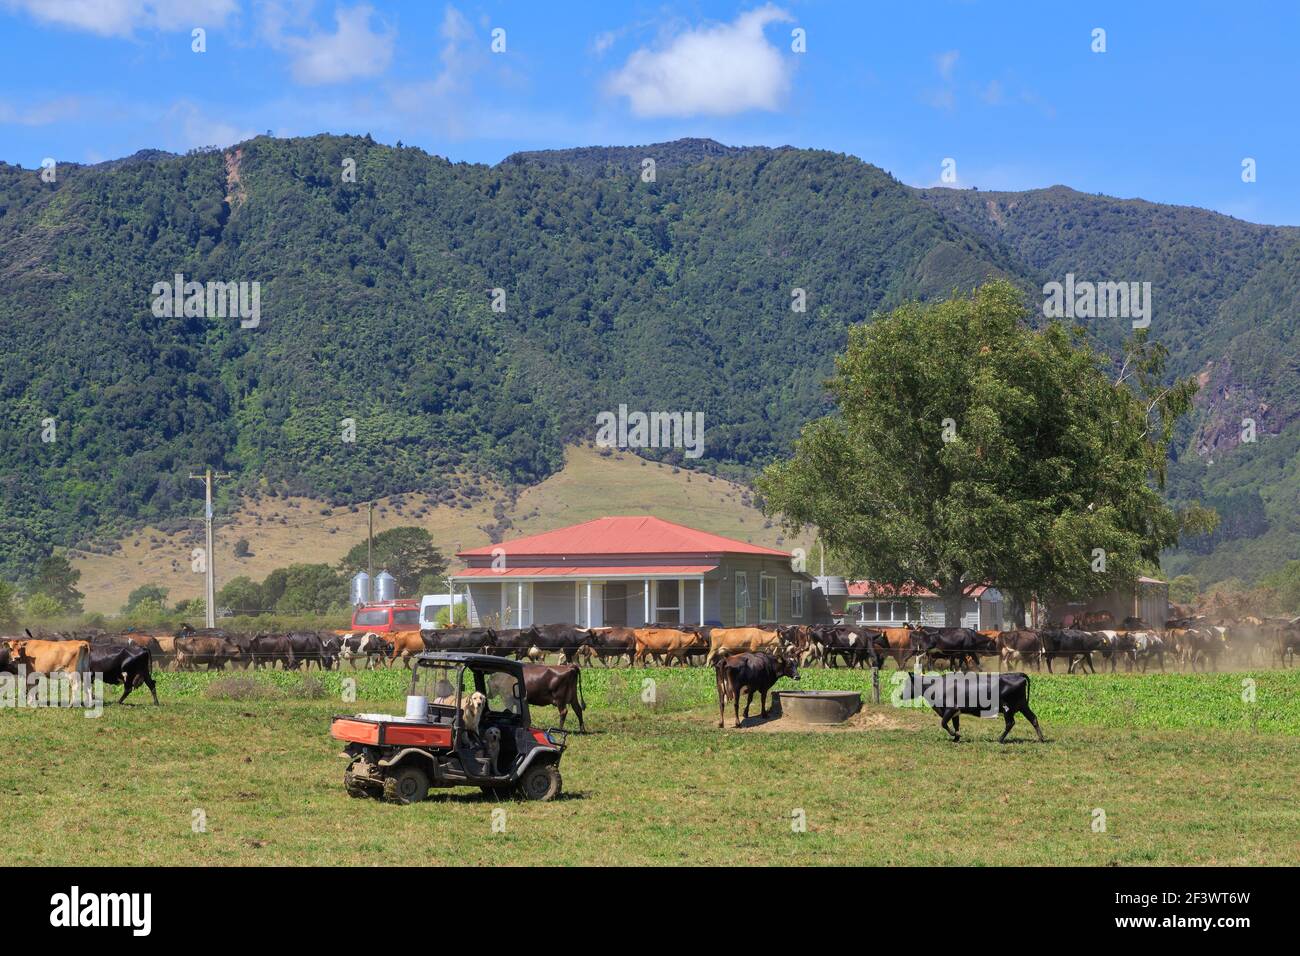 Ländliche Szene in der Region Waikato, Neuseeland. Viehpass vor einem Bauernhaus, mit den Kaimai Bergen im Hintergrund Stockfoto